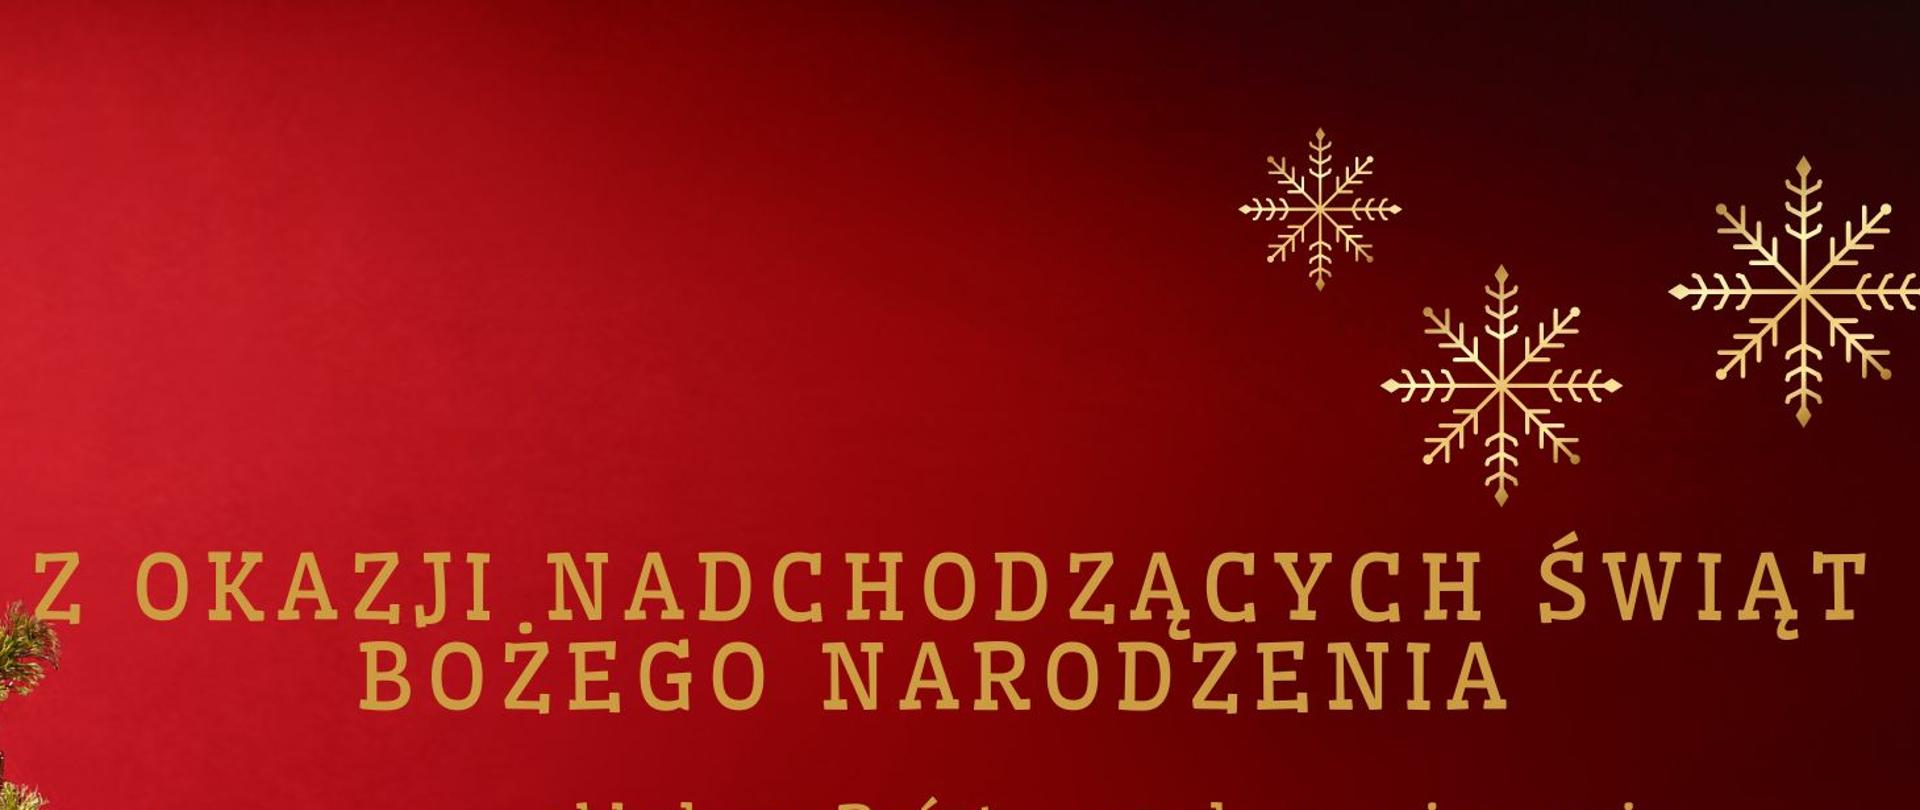 Plakat na czerwonym tle z kolorową choinką i prezentami po stronie lewej, w lewym dolnym rogu. Na całości znajdują się życzenia Bożonarodzeniowe w kolorze złotym. 